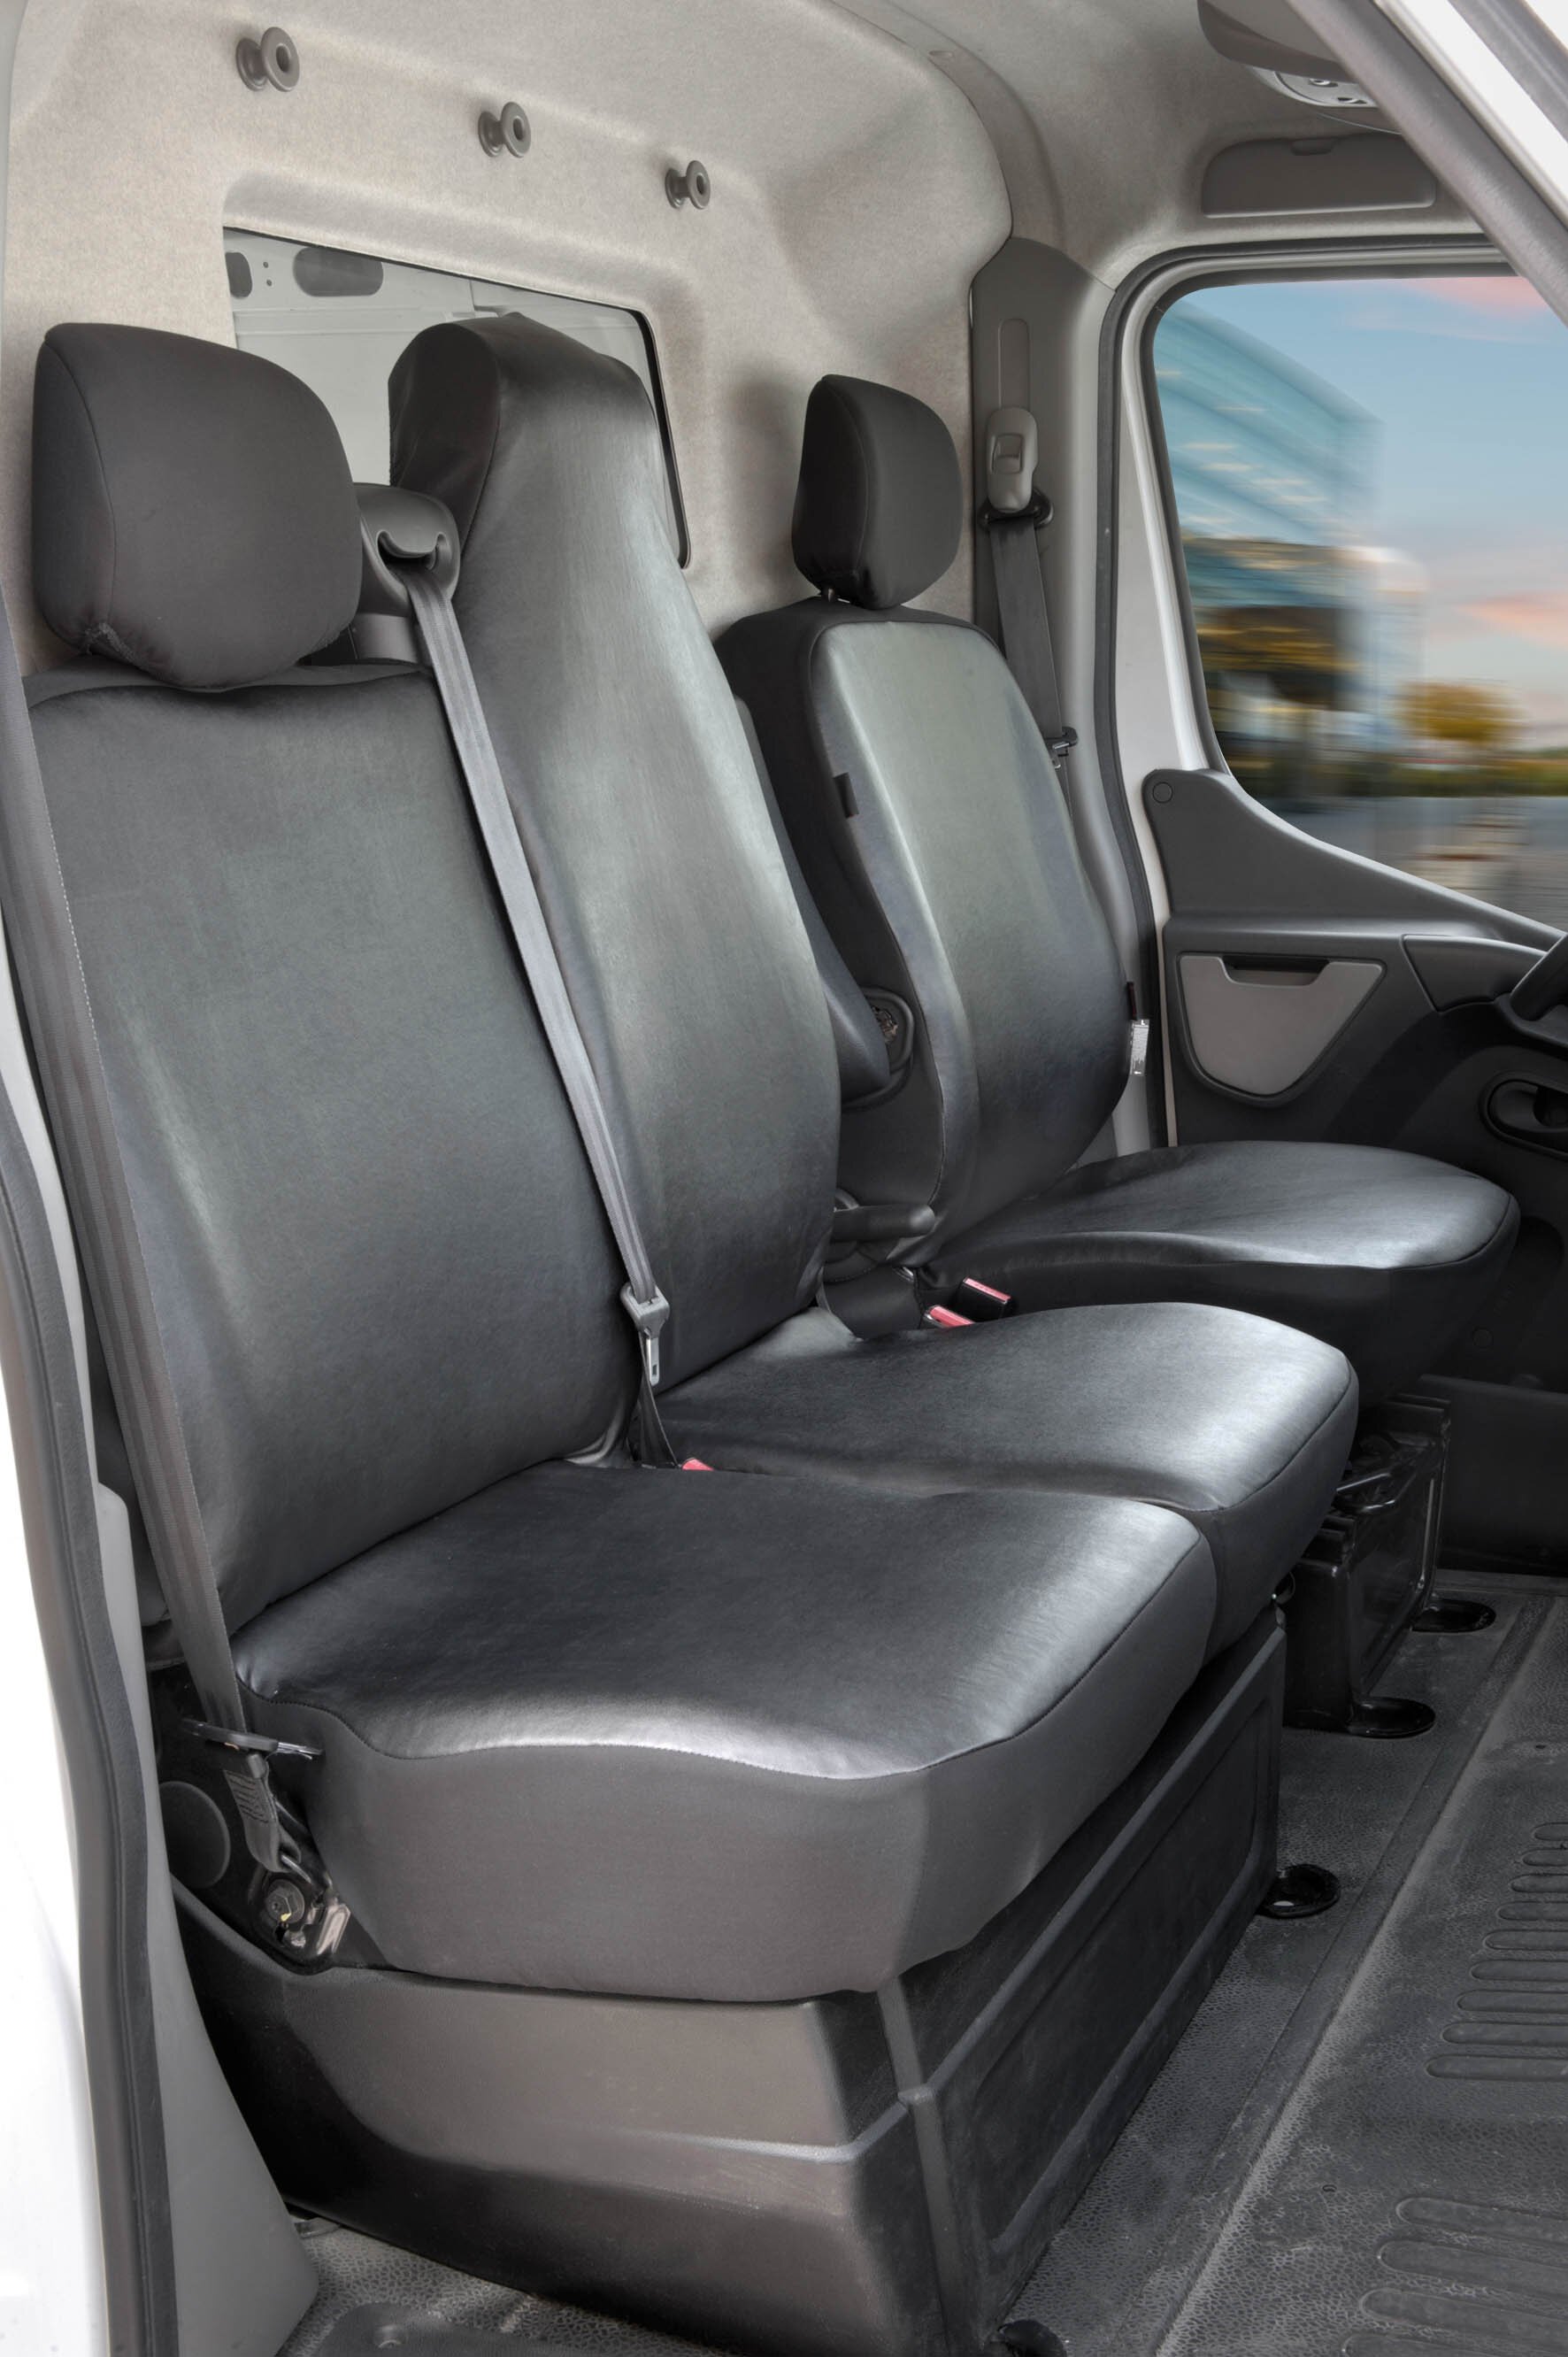 Autoschonbezug Transporter aus Kunstleder für Opel Movano, Renault Master, Nissan Interstar, Einzel- & Doppelbank